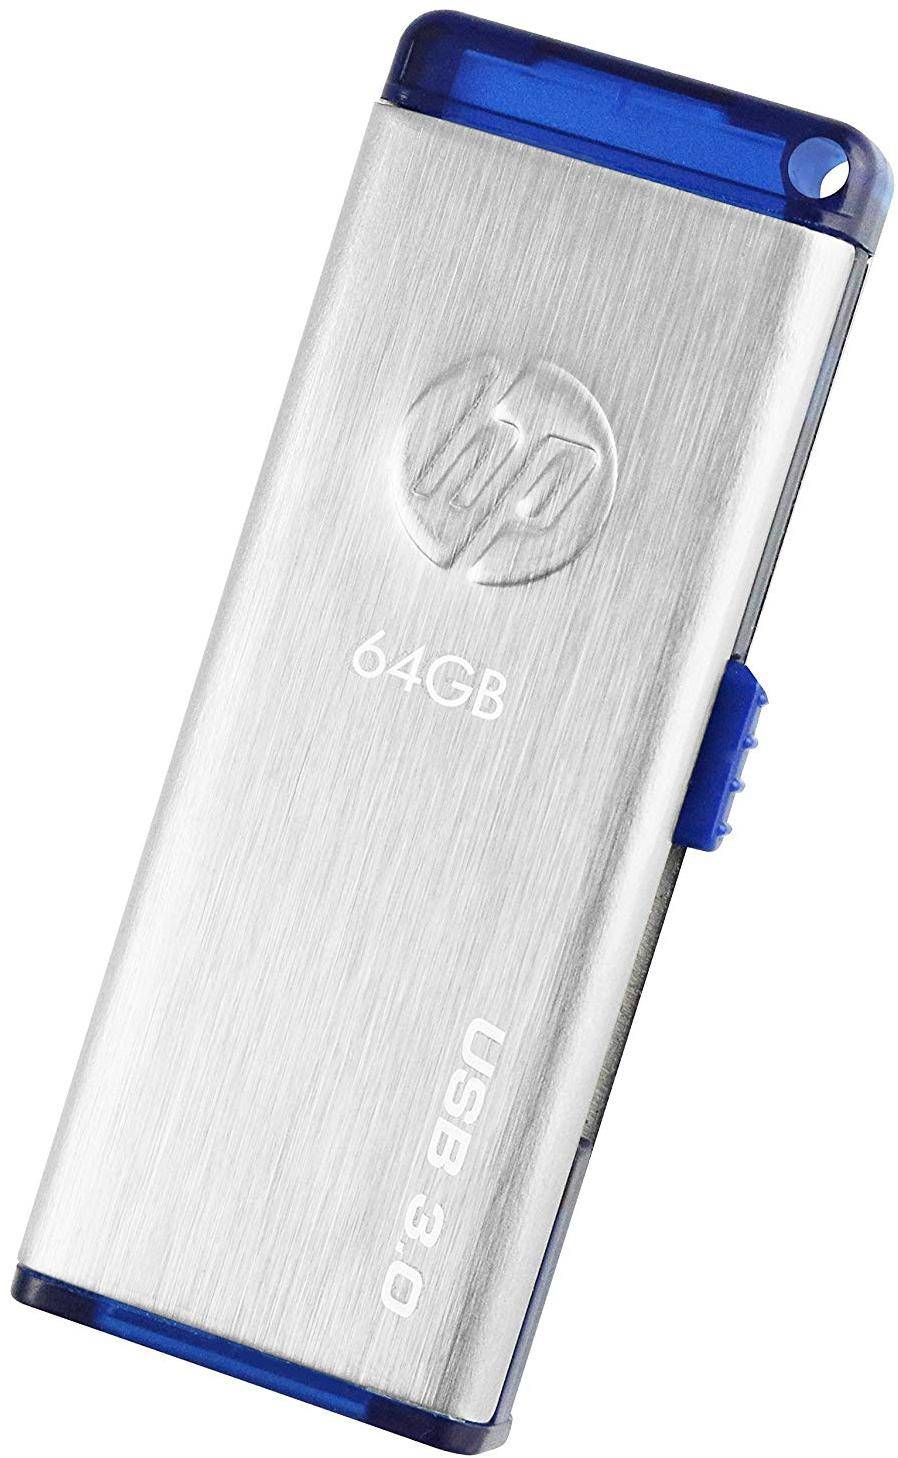 HP x730w USB 3.0 64 GB Pen Drive zoom image